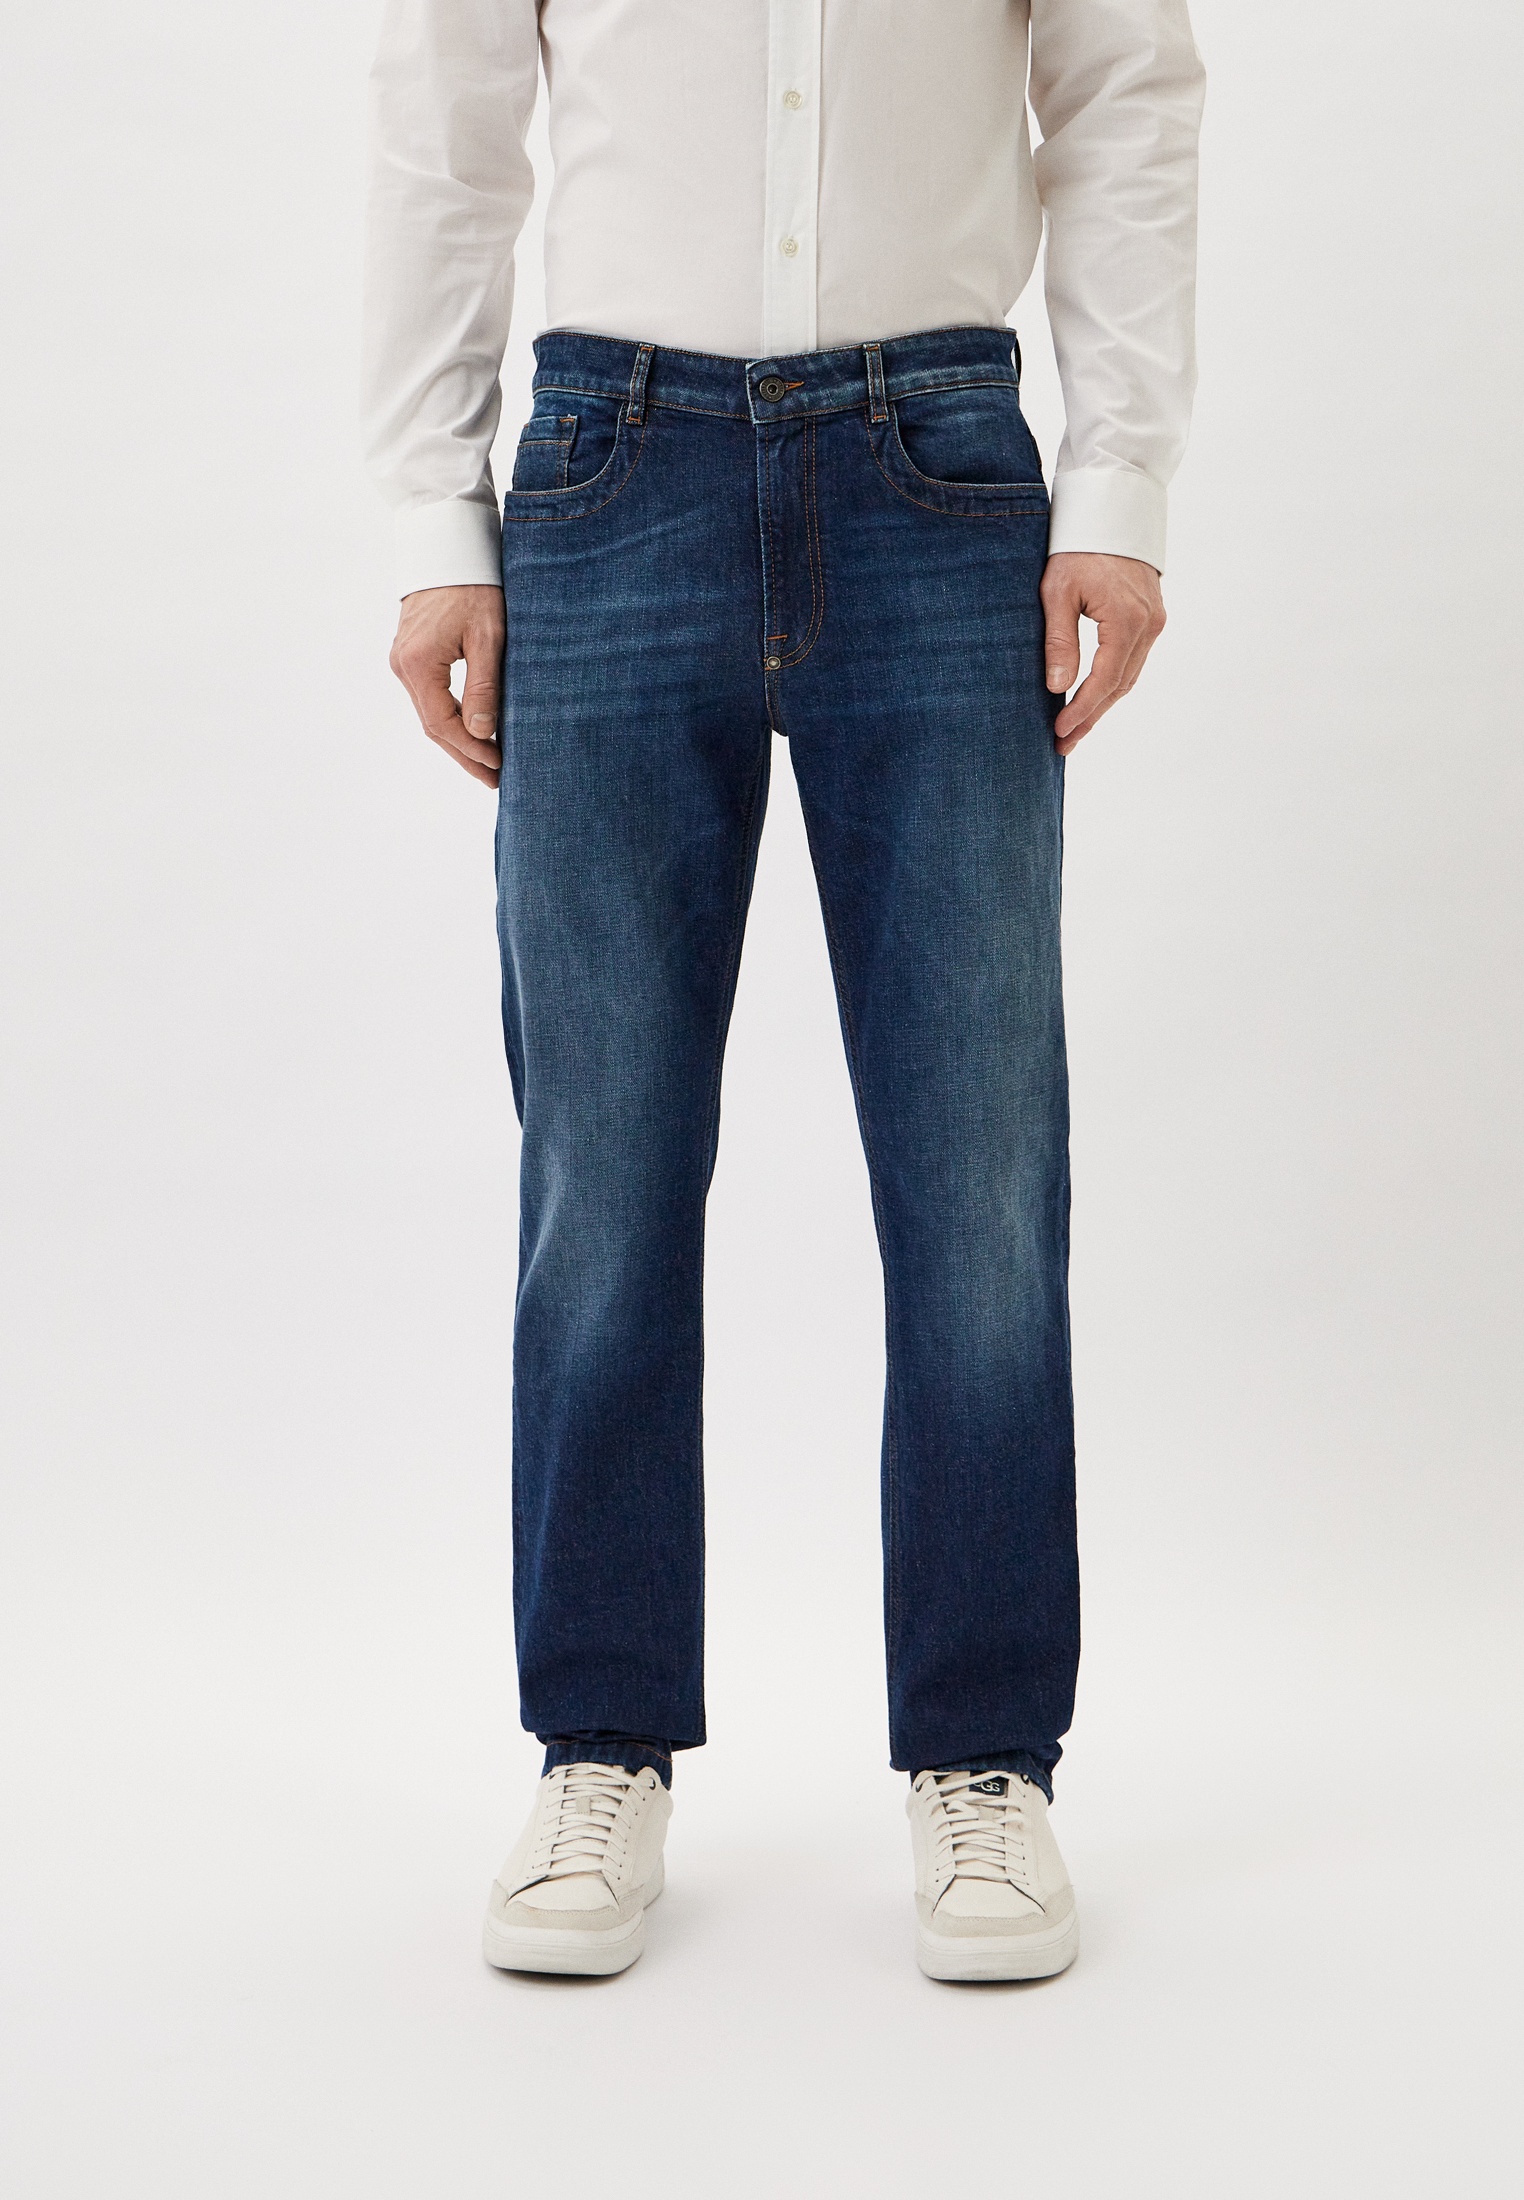 Мужские прямые джинсы Bikkembergs (Биккембергс) CQ10228S3976: изображение 1